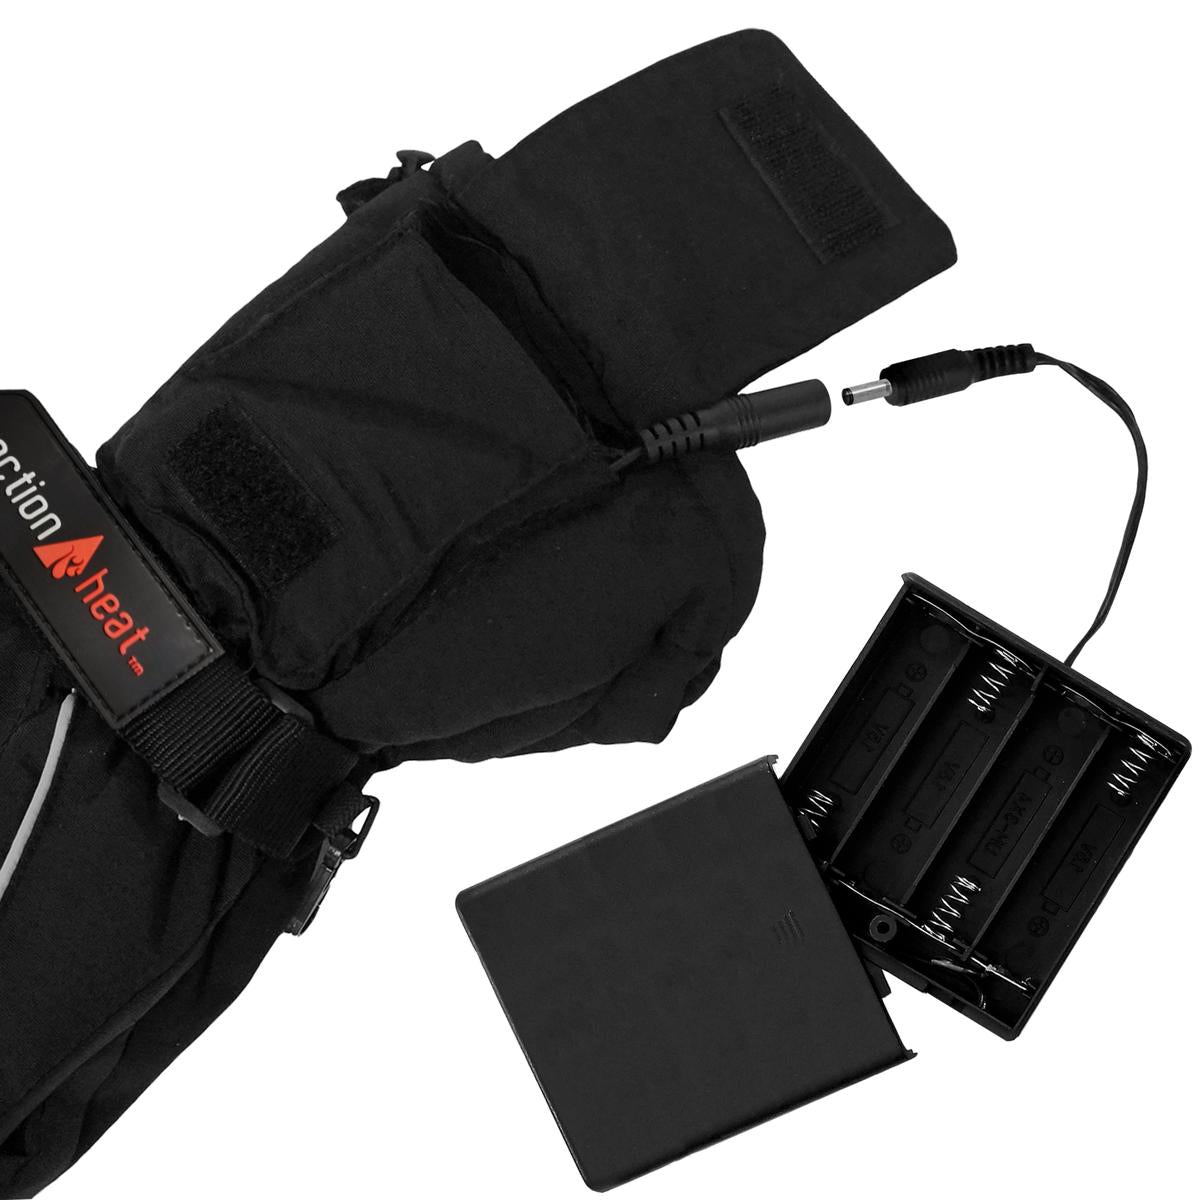 ActionHeat AA Men's Battery Heated Gloves - Full Set